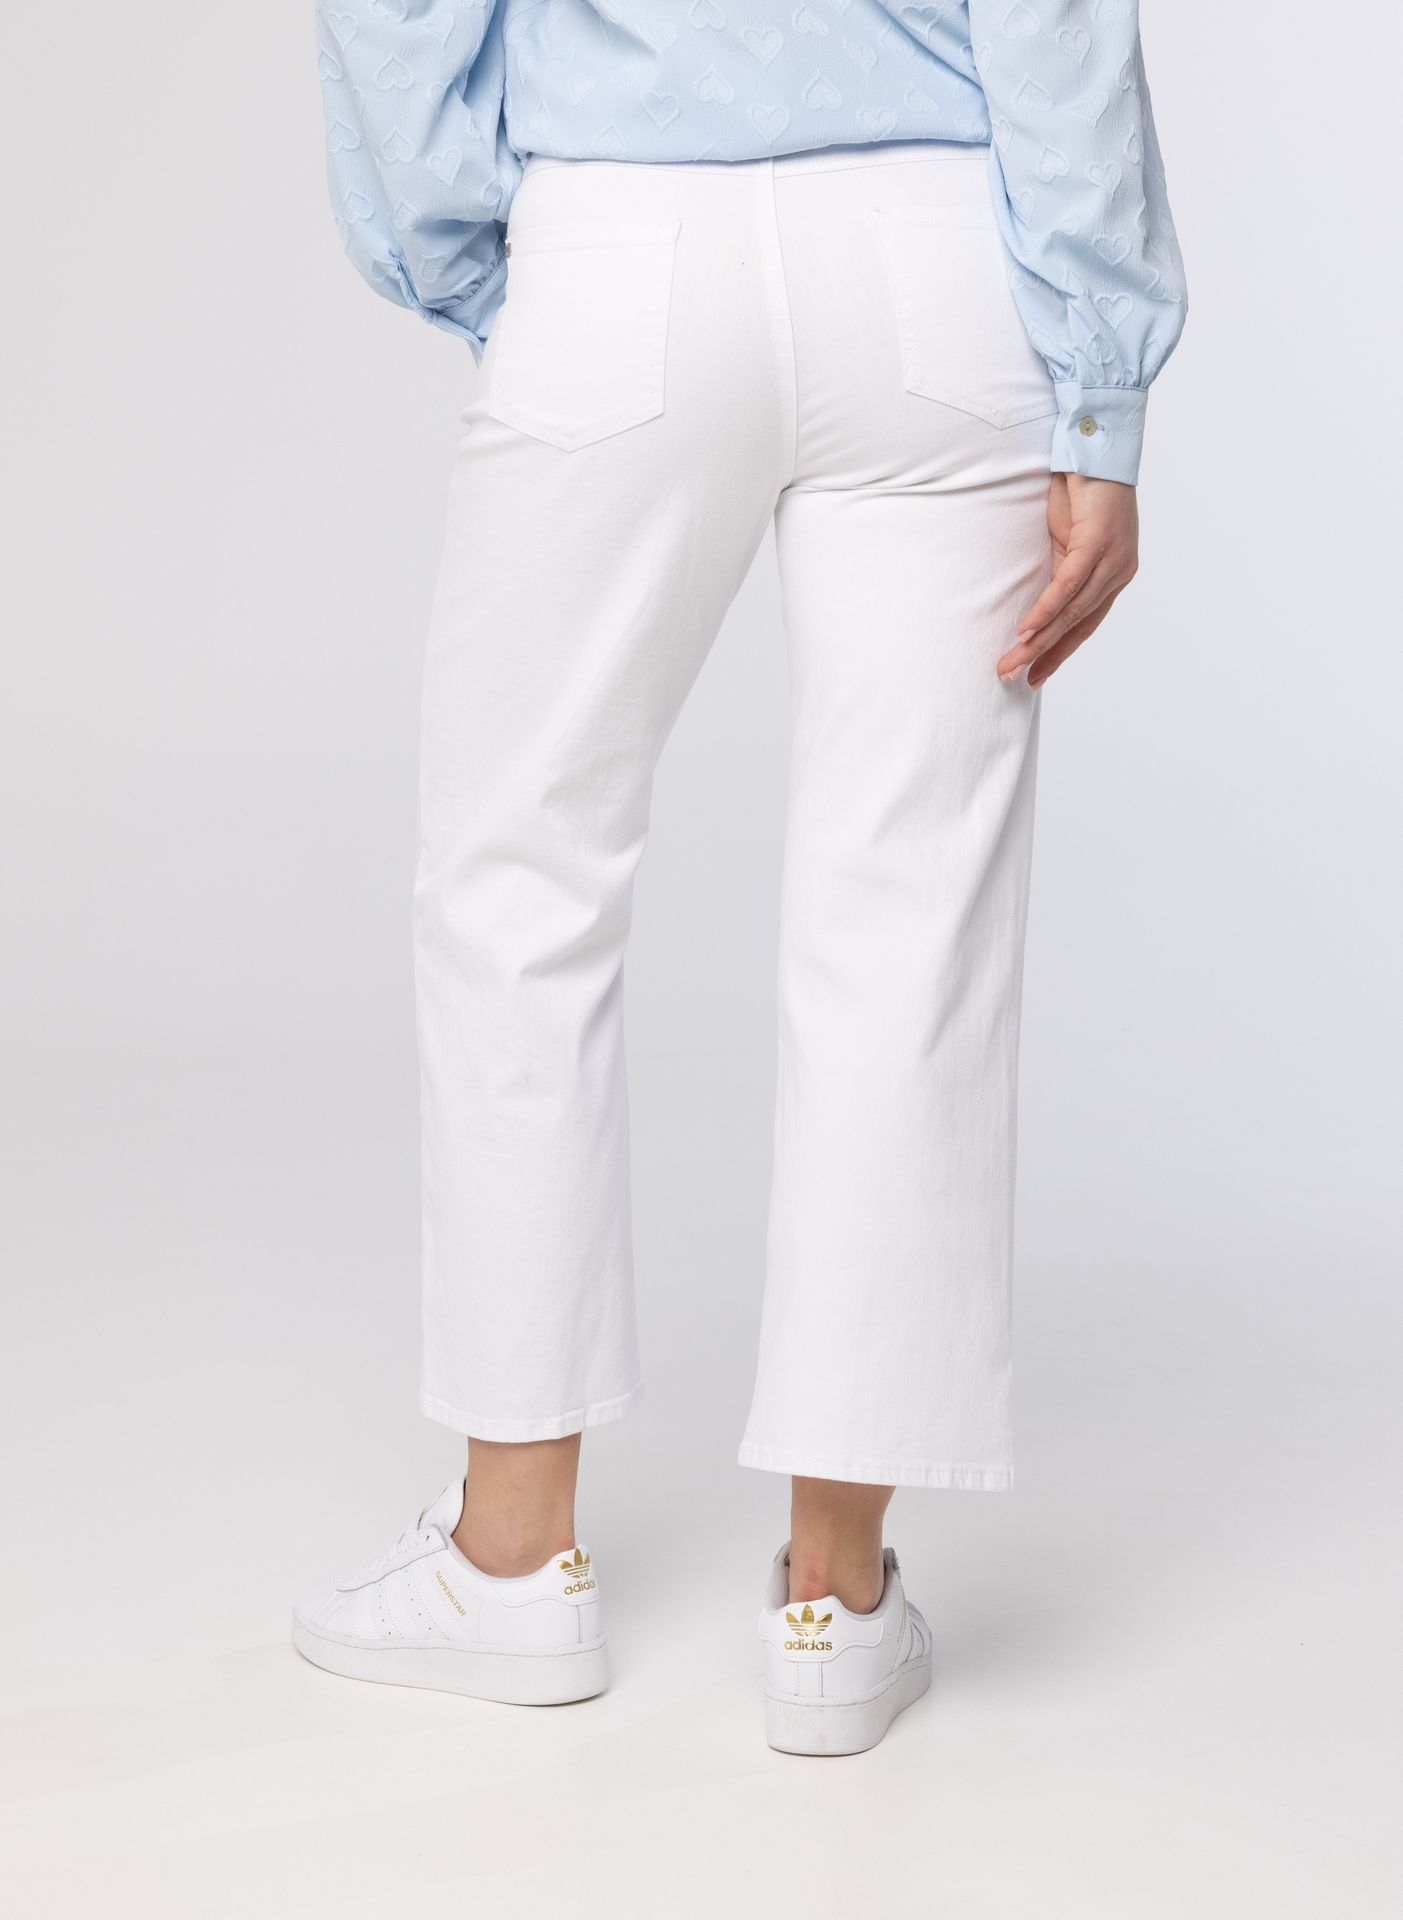 Norah Witte spijkerbroek white 212352-100